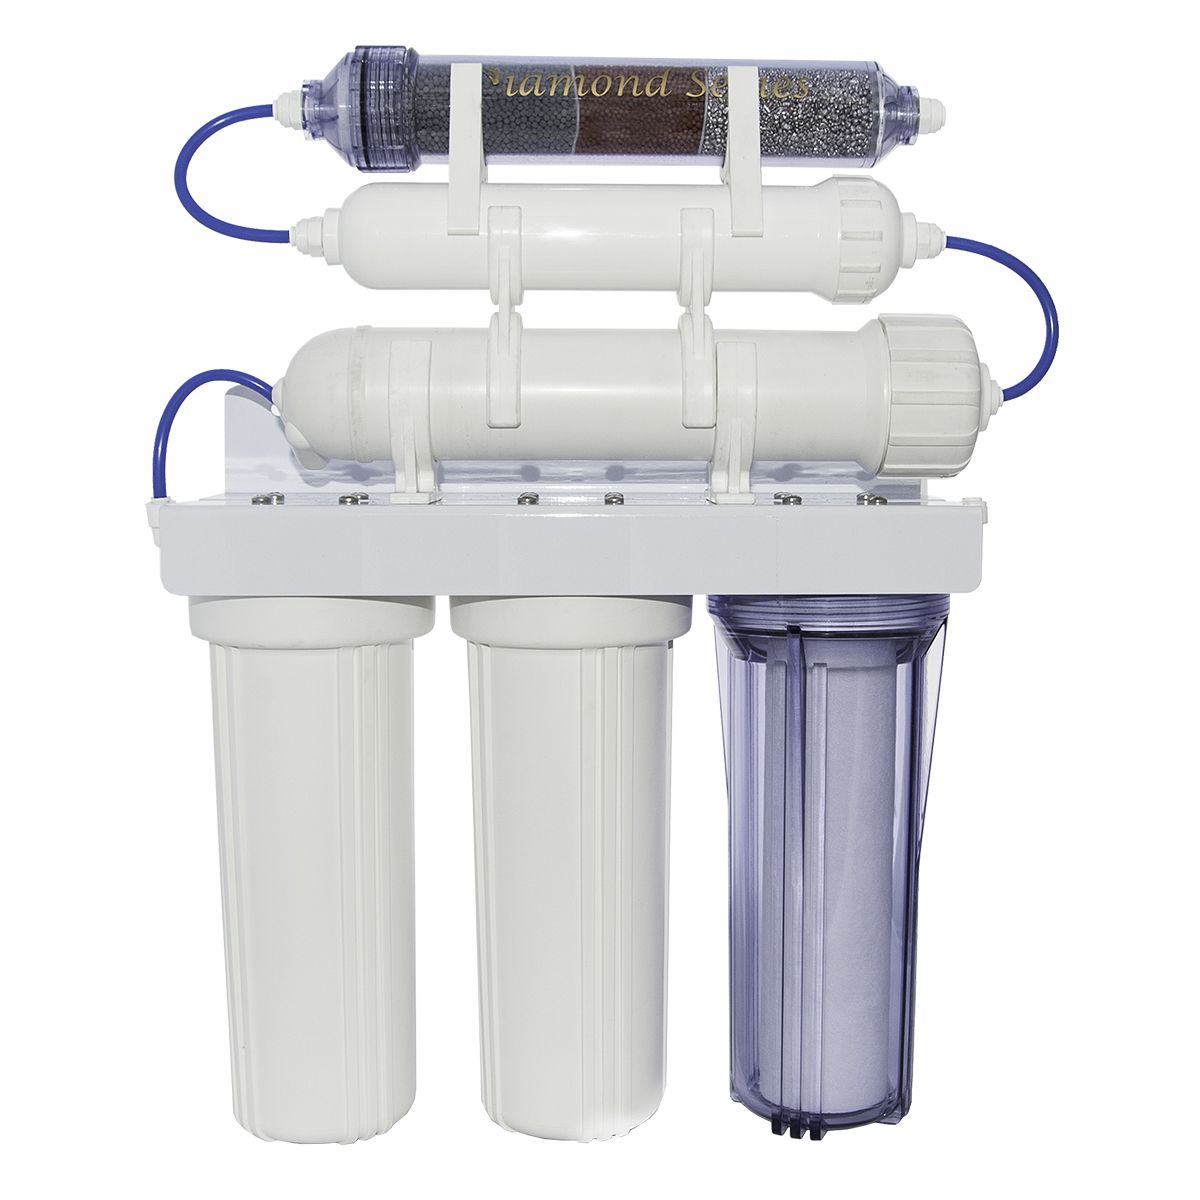 Фильтр воды б. Фильтр 5 микронный промышленный фильтр для воды. Water Filter 6pomp. Фильтр 00250111 Filtration. Фильтр воды ФПБ 25.